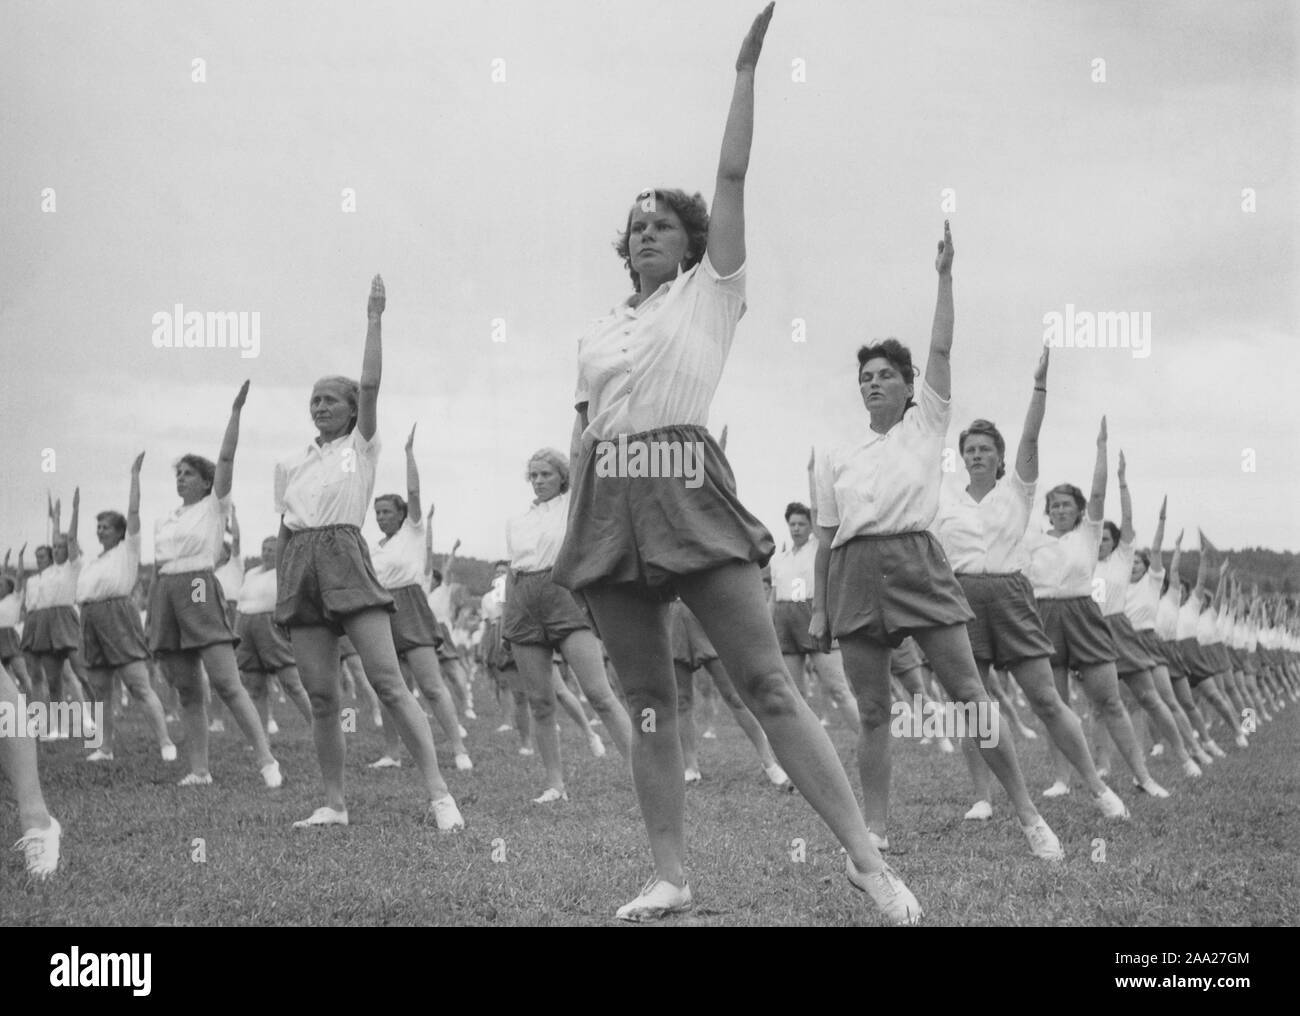 Gymnastik in den 1940er Jahren. Die beliebten Frauen Hausfrau Gymnastik wird überall praktiziert. In den 1940er Jahren das Wissen über die körperliche Übung encreased und die Notwendigkeit der Aktive, Frauen und Männer. Hier eine große Anzahl von Frauen, die zusammen im Freien ausüben. Schweden 1949 Stockfoto